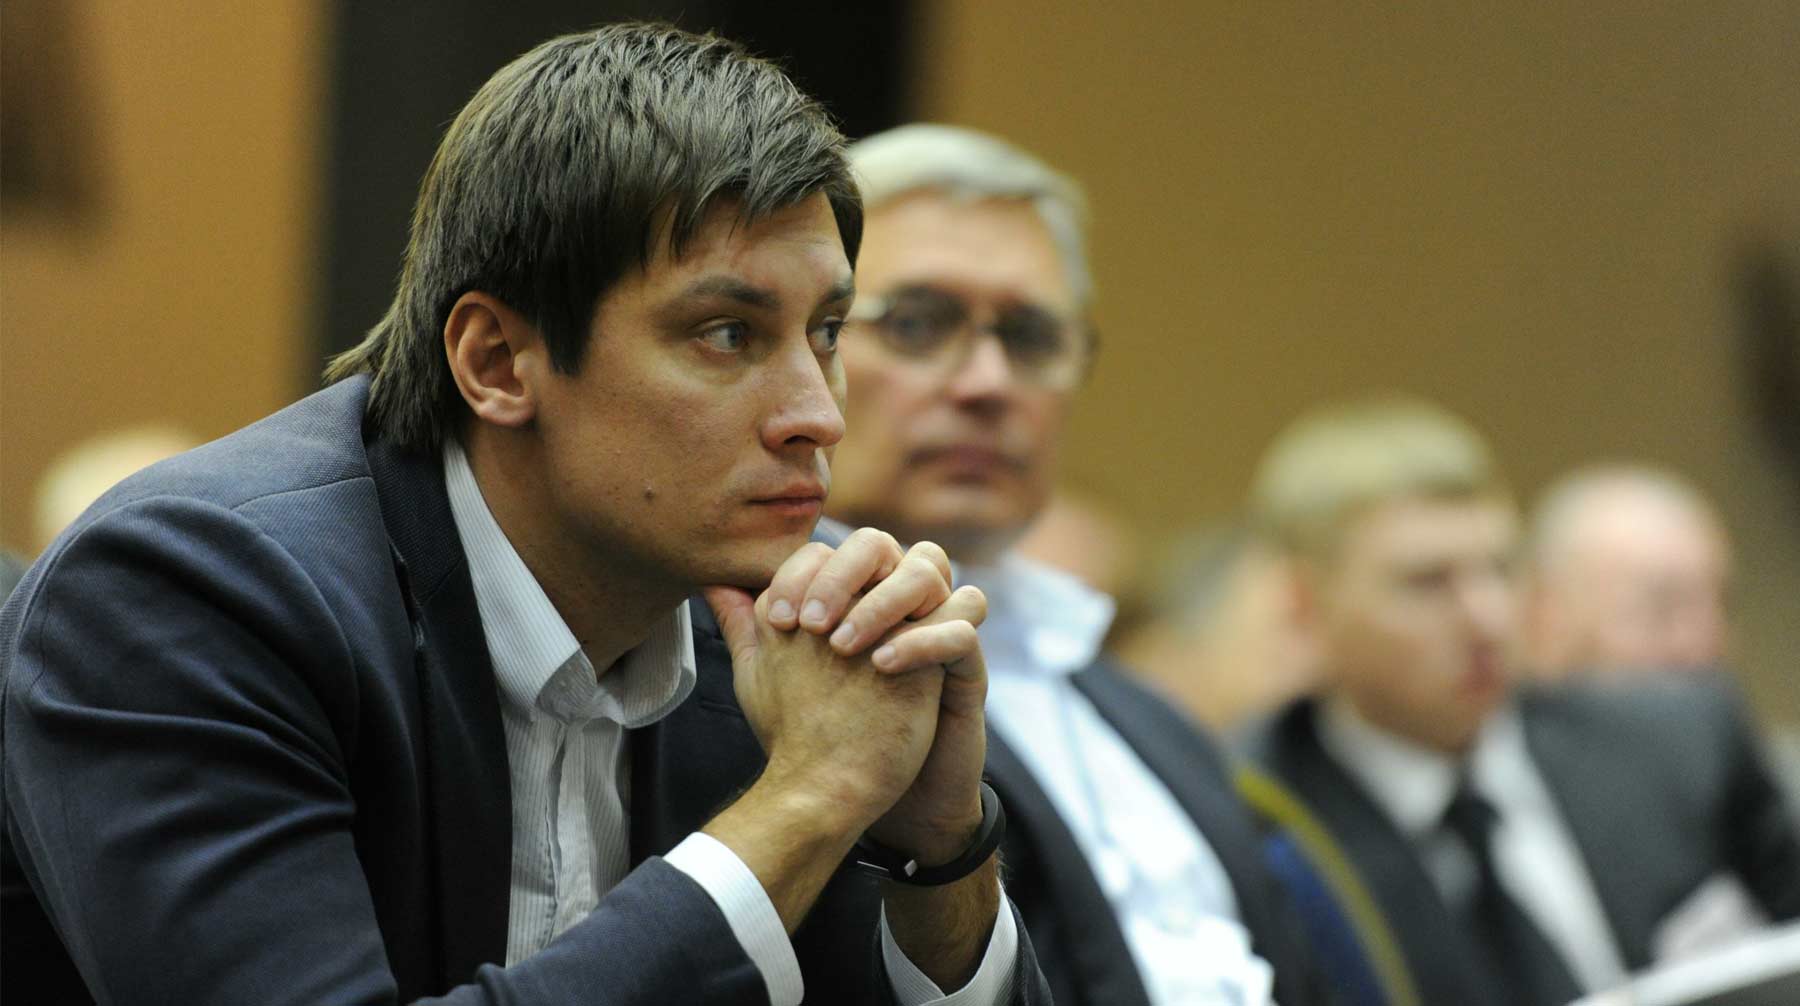 Пресс-секретарь политика Алексей Обухов заявил, что оппозиционер подаст жалобу в ближайшие дни Фото: © GLOBAL LOOK Press